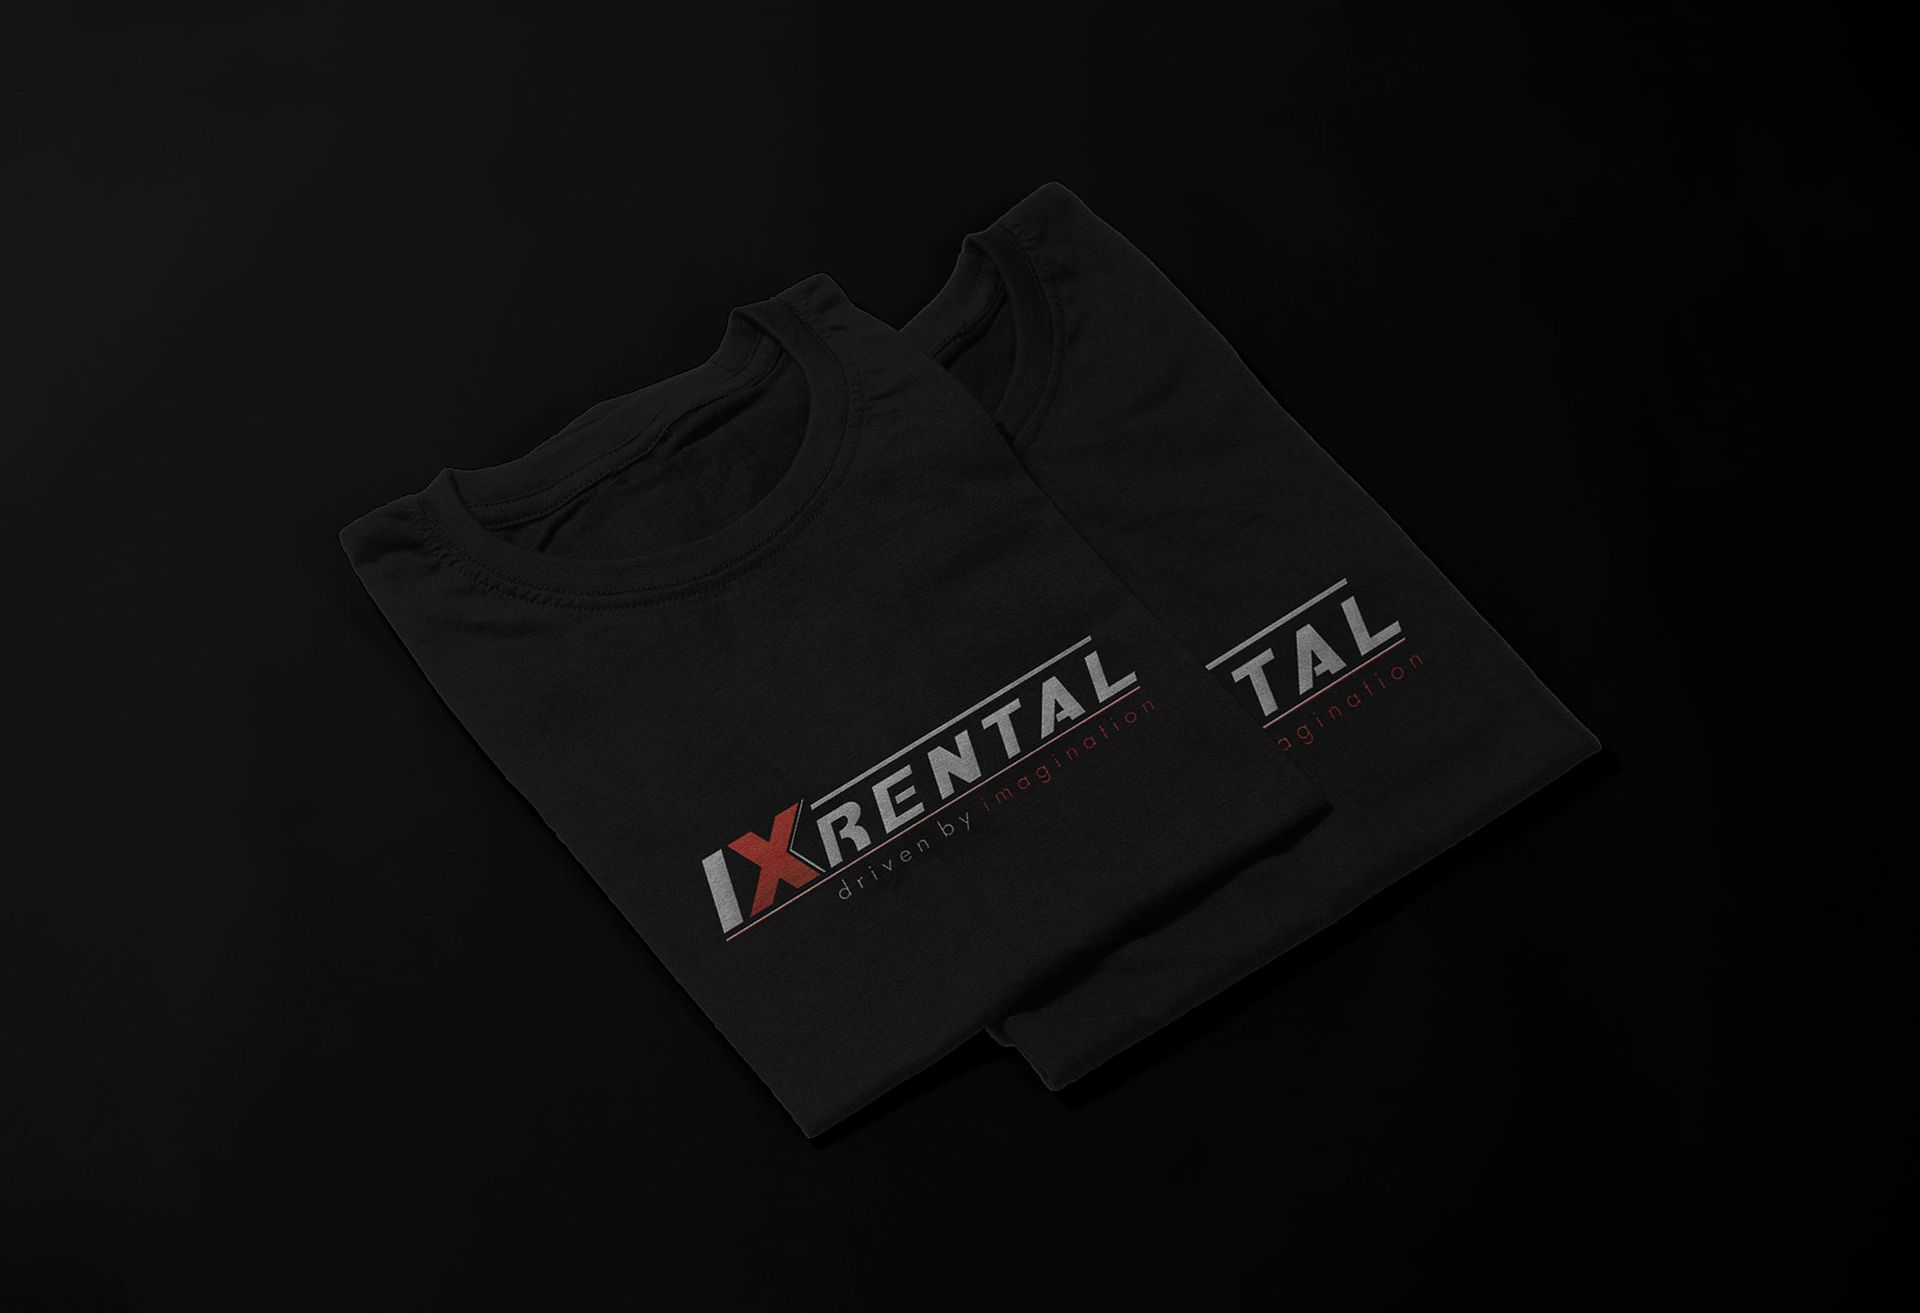 A black IX Reental t-shirt